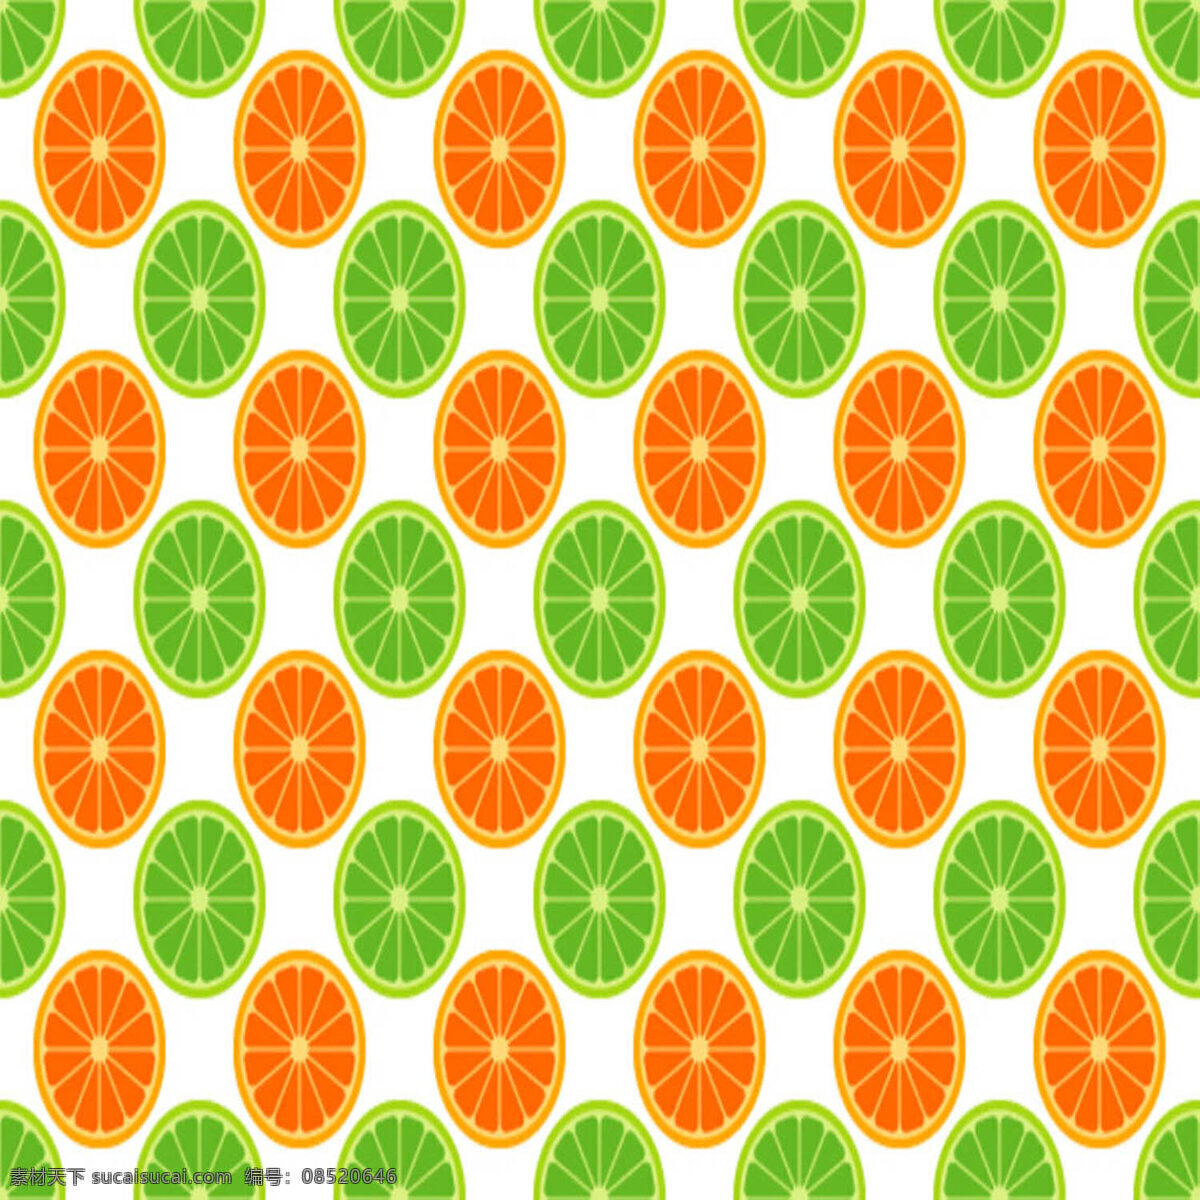 完整 橙子 切片 绿色 纹理素材 纹路背景 纹路图片 棕红色 橙子纹理 背景图片